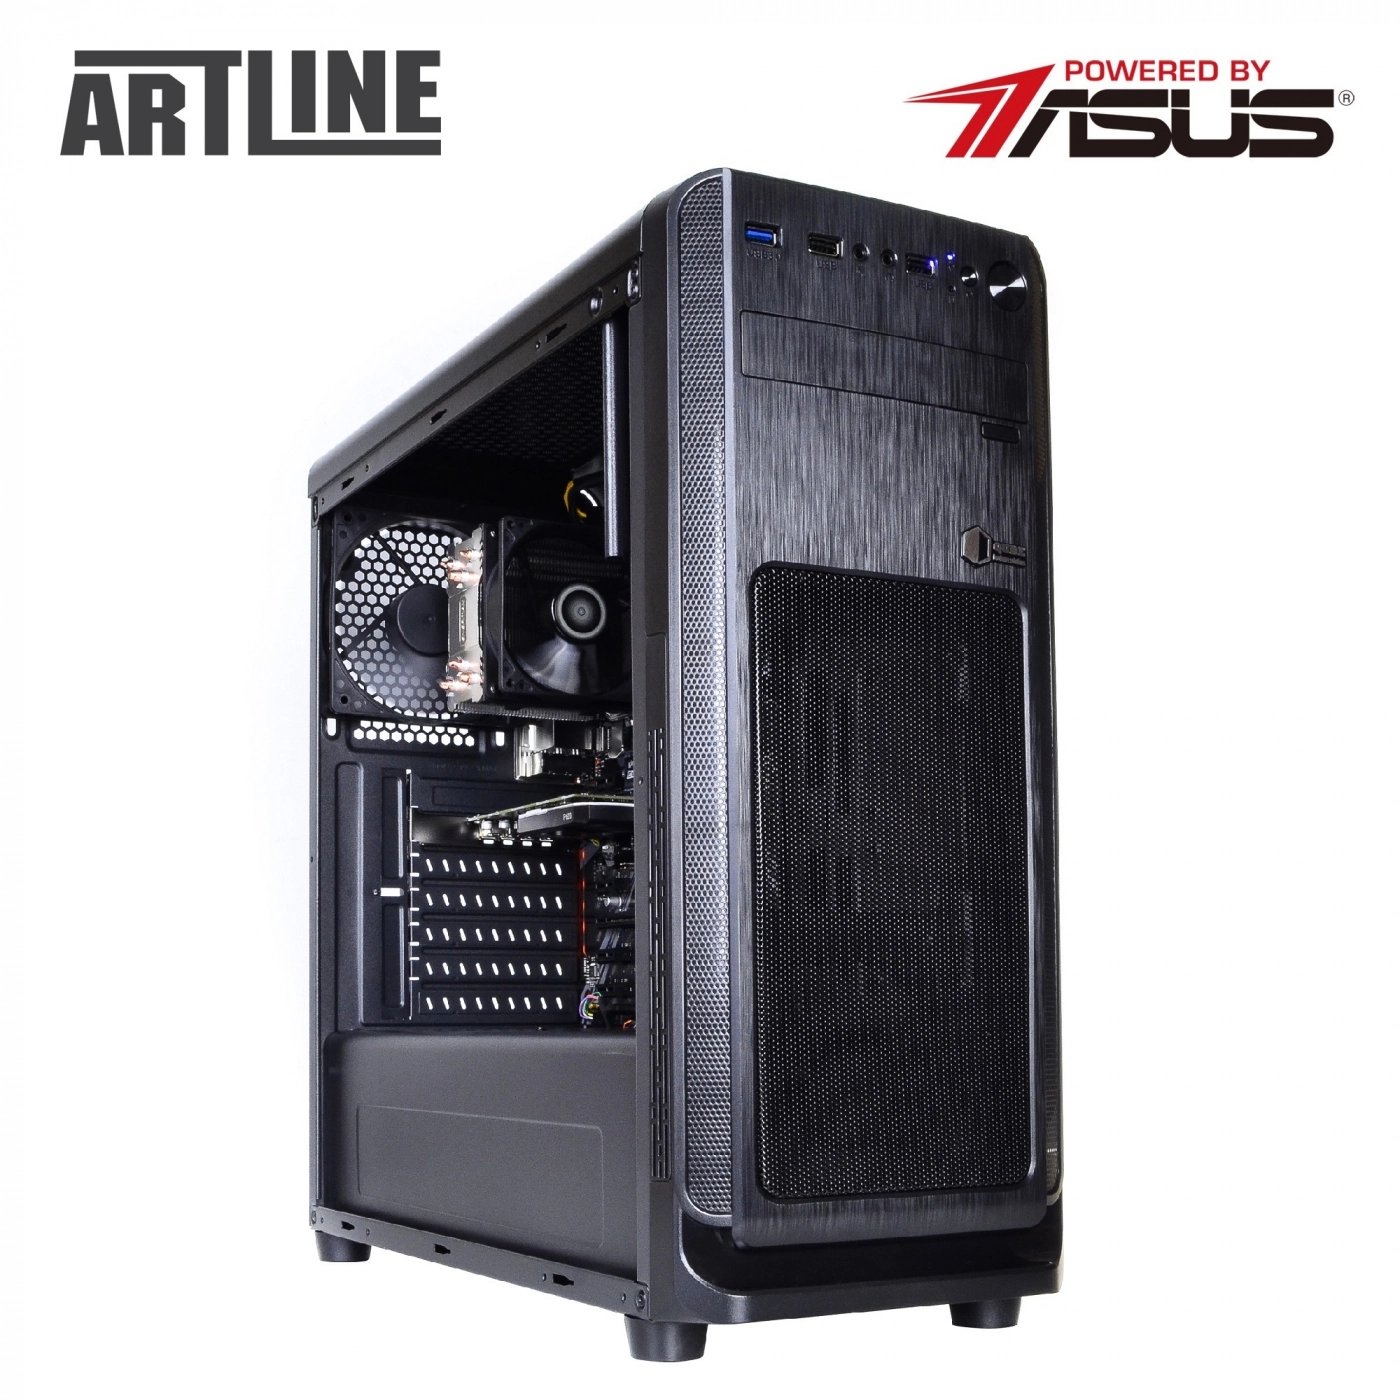 Купить Сервер ARTLINE Business T63v07 - фото 12